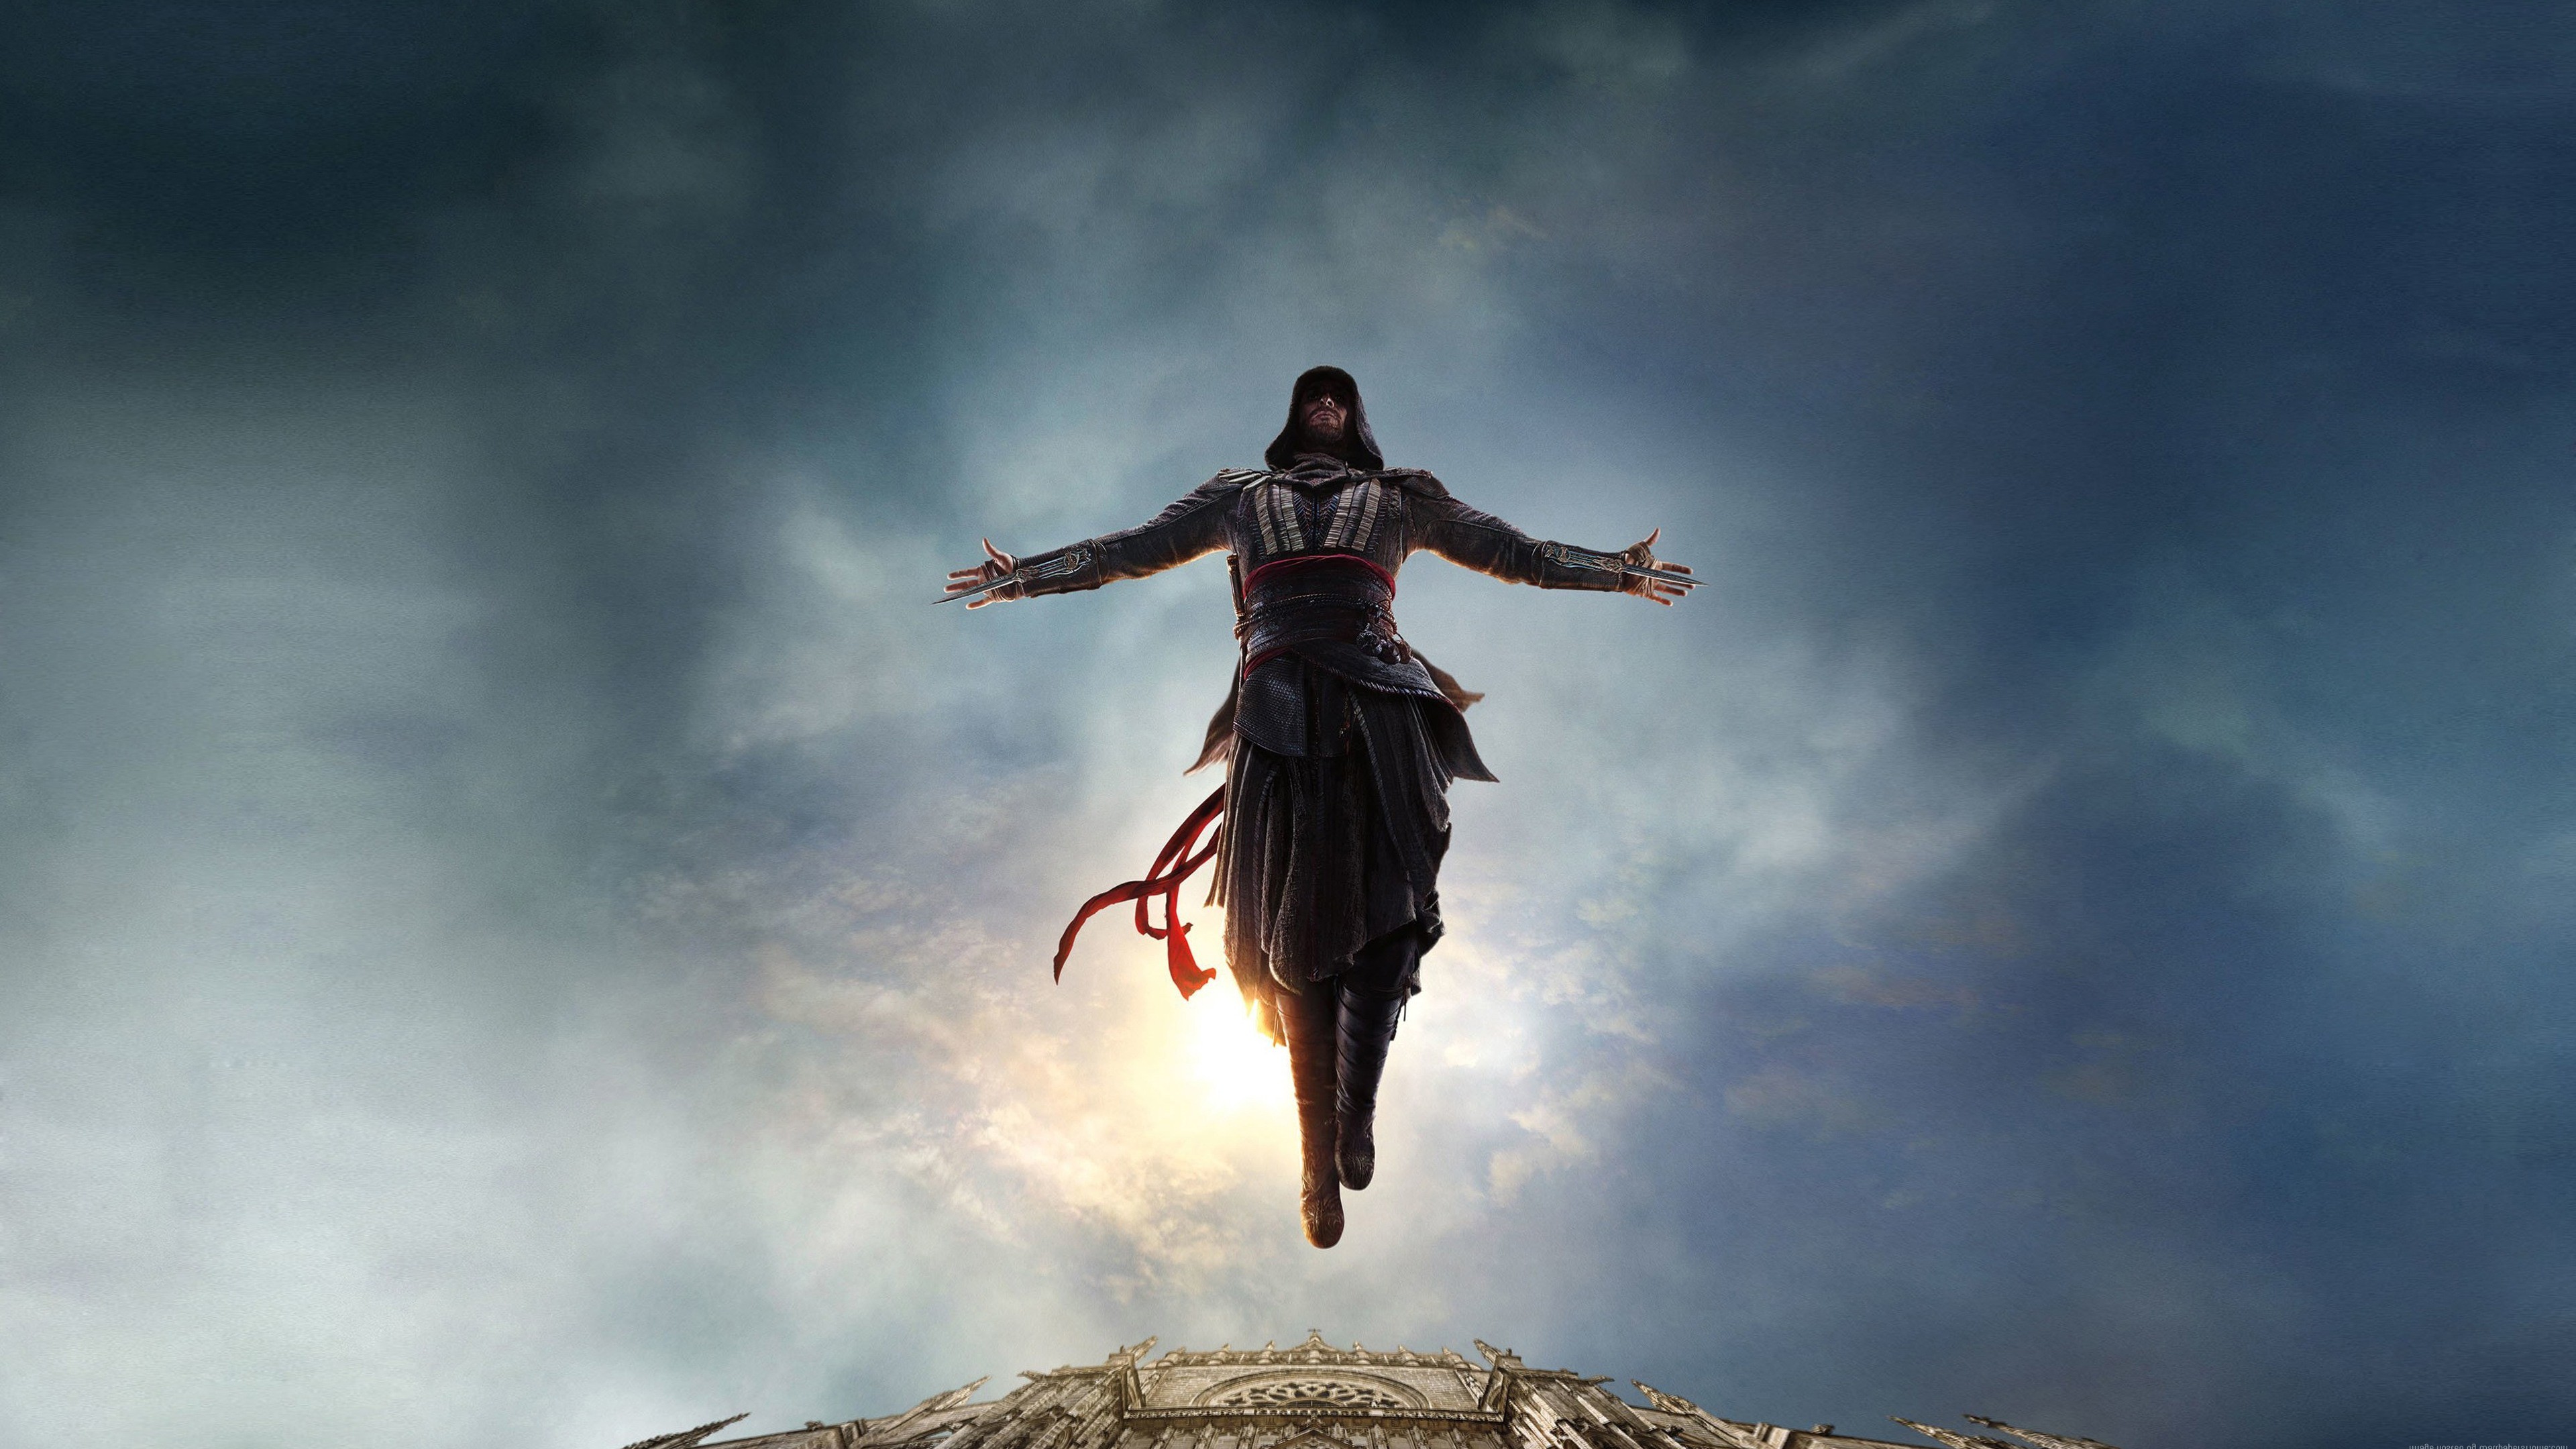 General 3840x2160 movies Assassin's Creed jumping film stills men